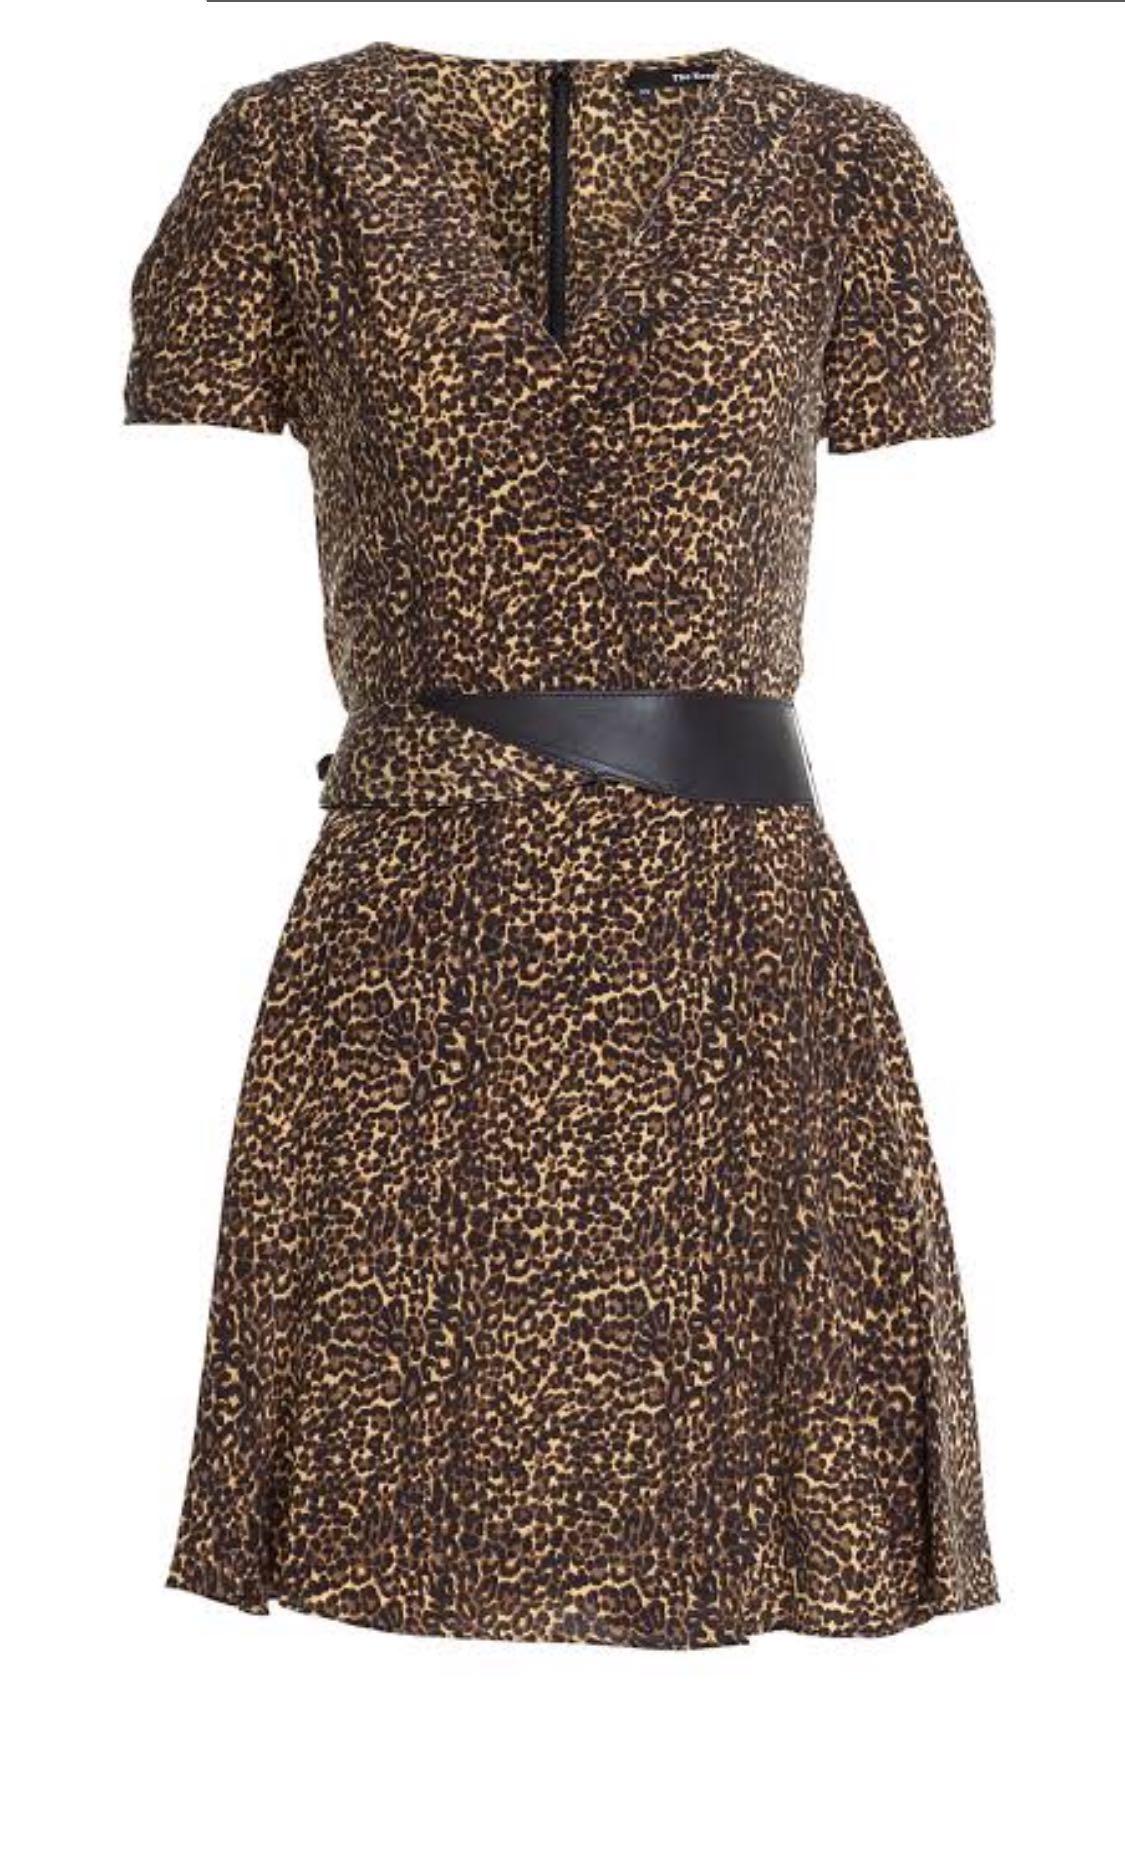 the kooples leopard dress